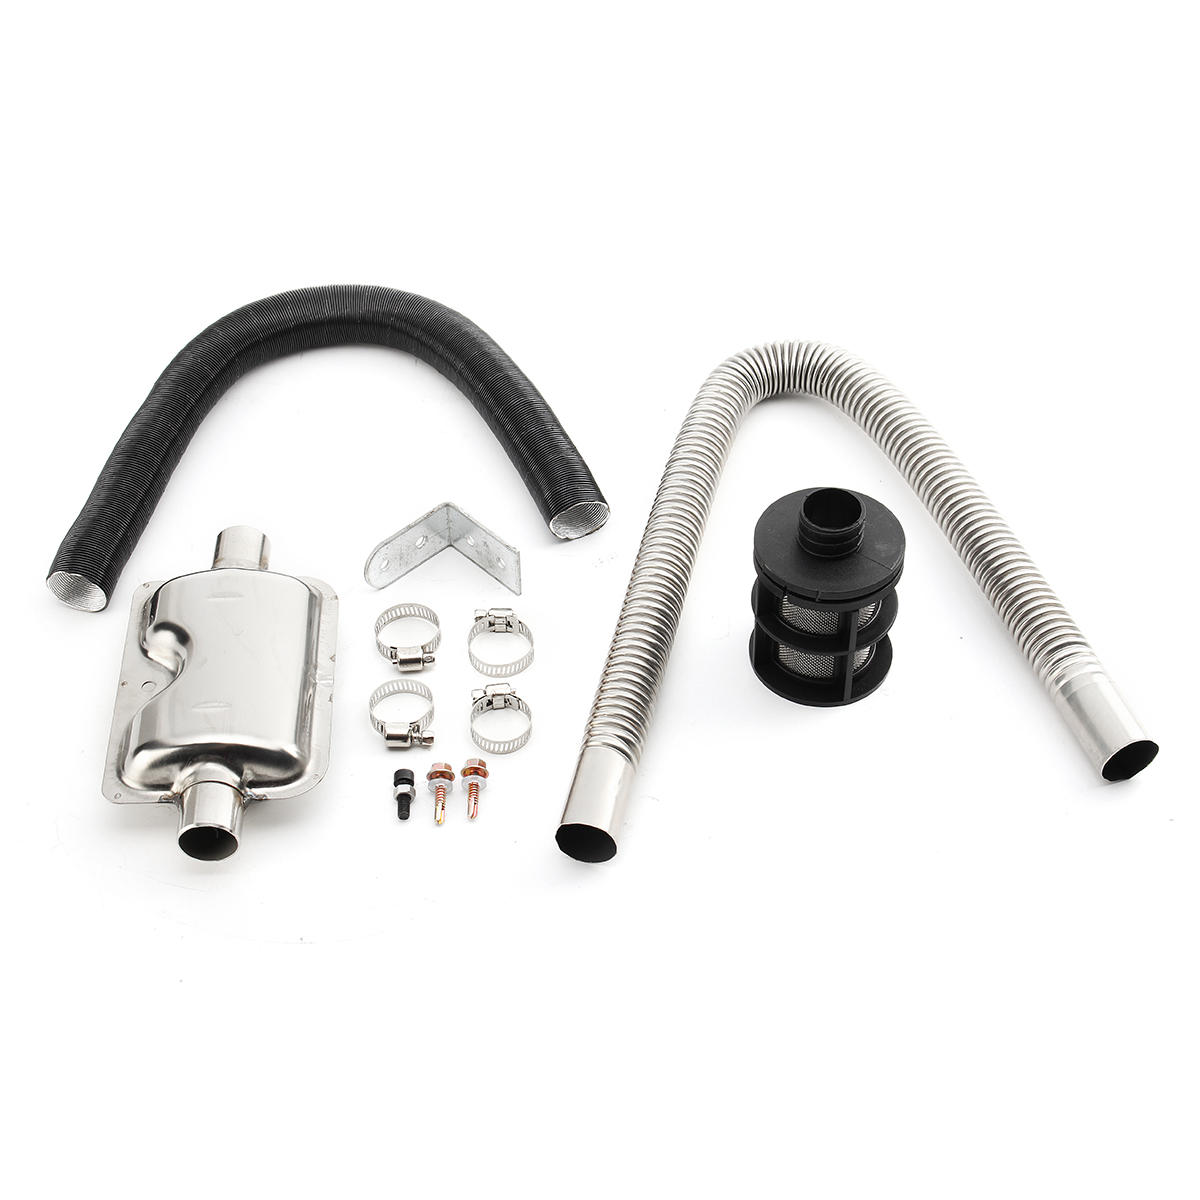 Kaufe Lvye Neues Upgrade 24 mm Auspuffrohr Schalldämpfer für  Auto-Luft-Diesel-Standheizung